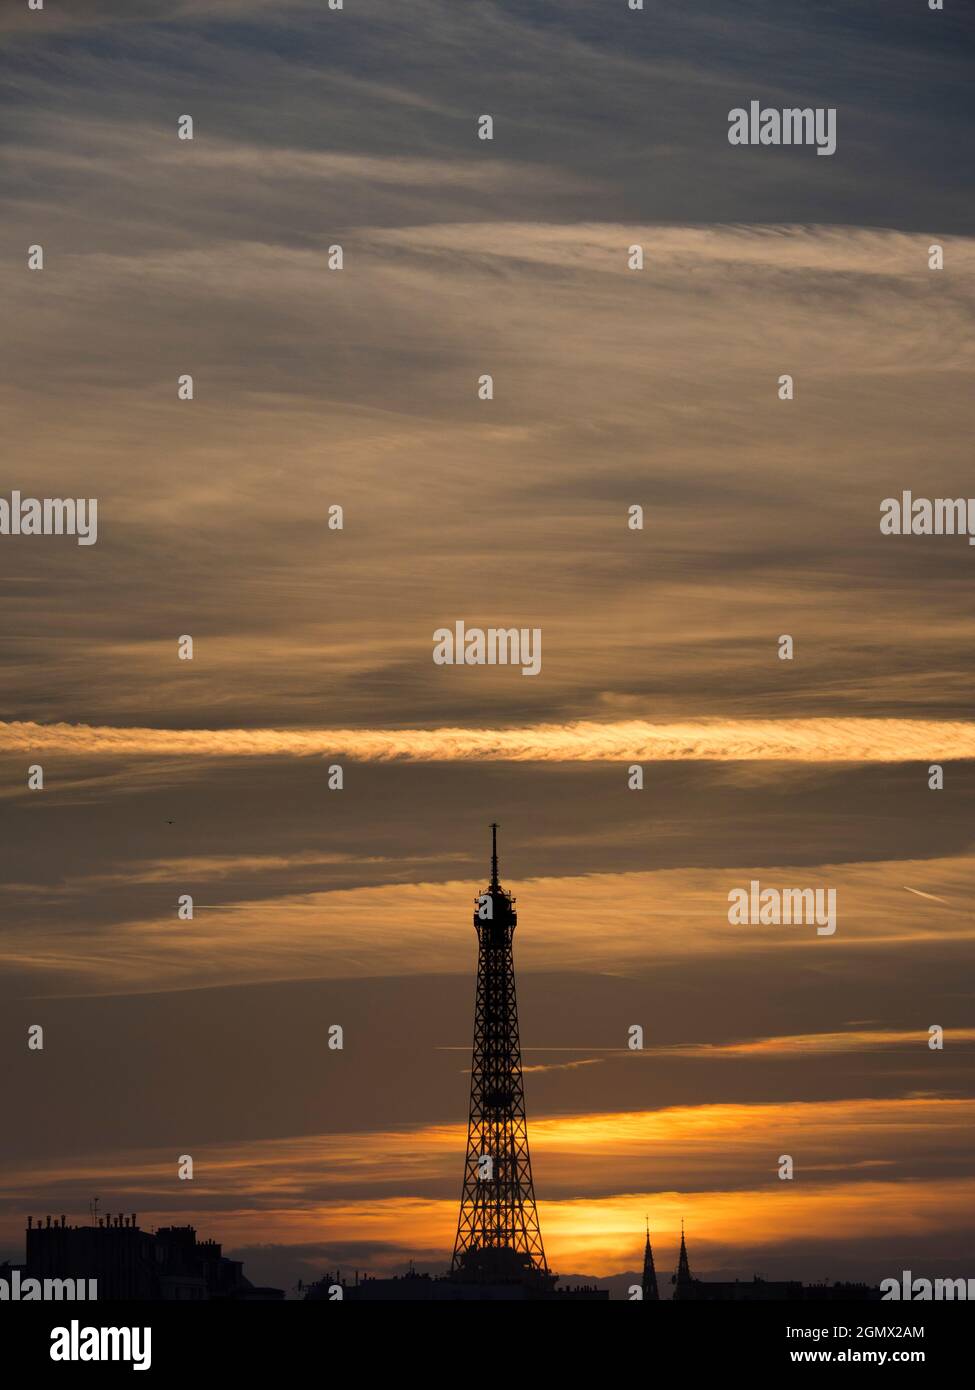 Paris, France - 18 septembre 2018 construite pour l'exposition universelle de 1889, la Tour Eiffel de 324 mètres (1,063 pieds) est devenue une icône culturelle de Paris Banque D'Images